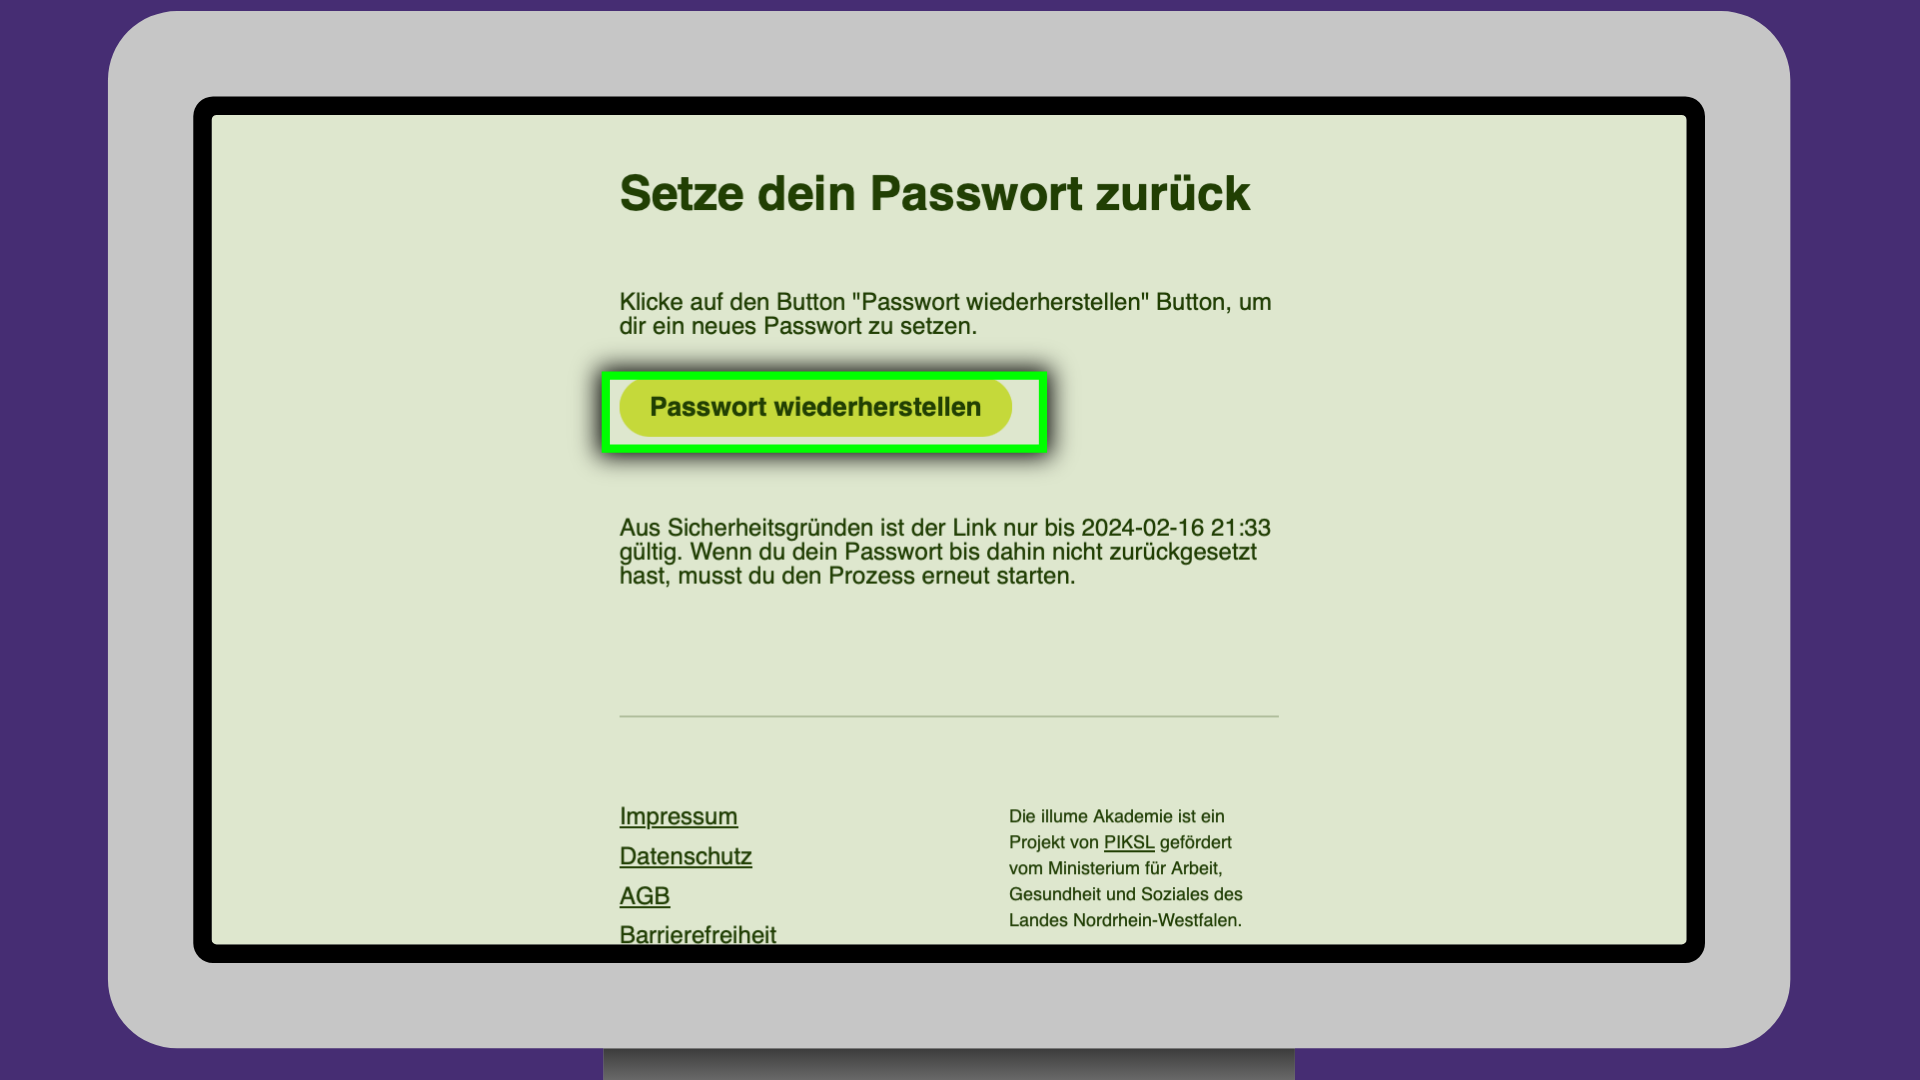 Die Bestätigung-Email ist auf einem Bildschirm abgebildet. Der Button "Passwort wiederherstellen" ist markiert.